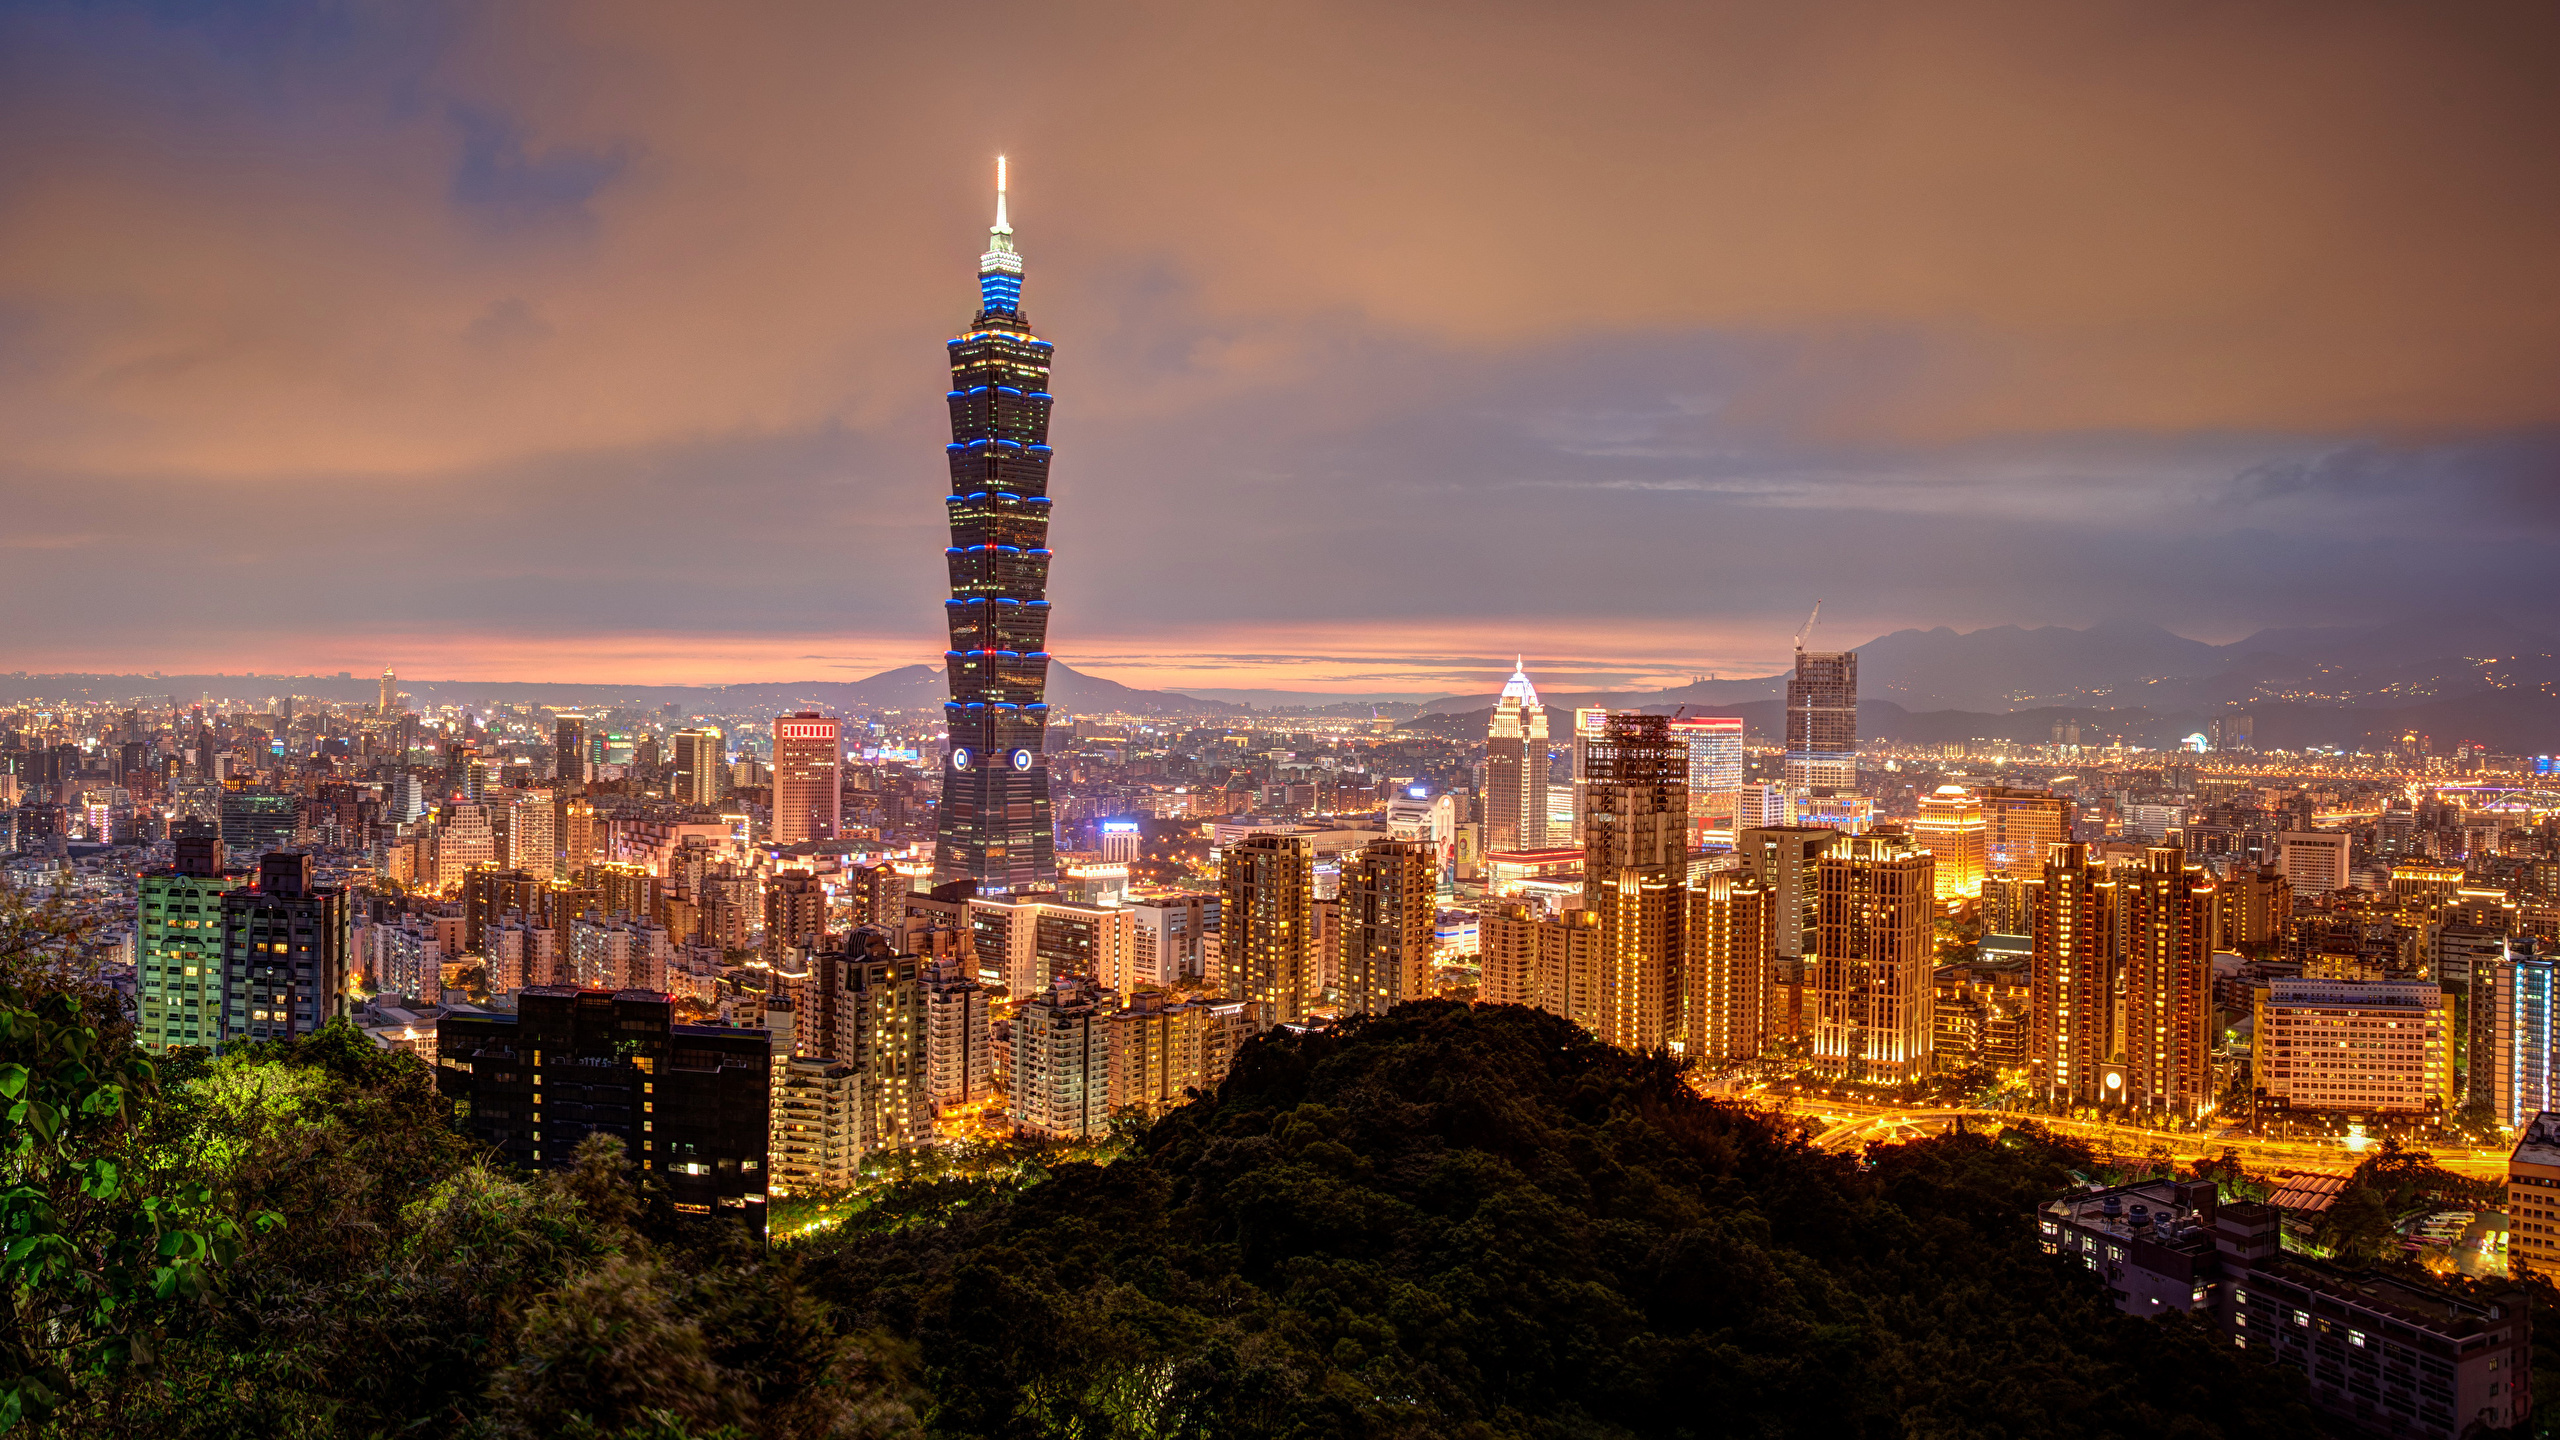 壁紙 2560x1440 中華人民共和国 住宅 超高層建築物 台湾 台北市 夜 メガロポリス 都市 ダウンロード 写真